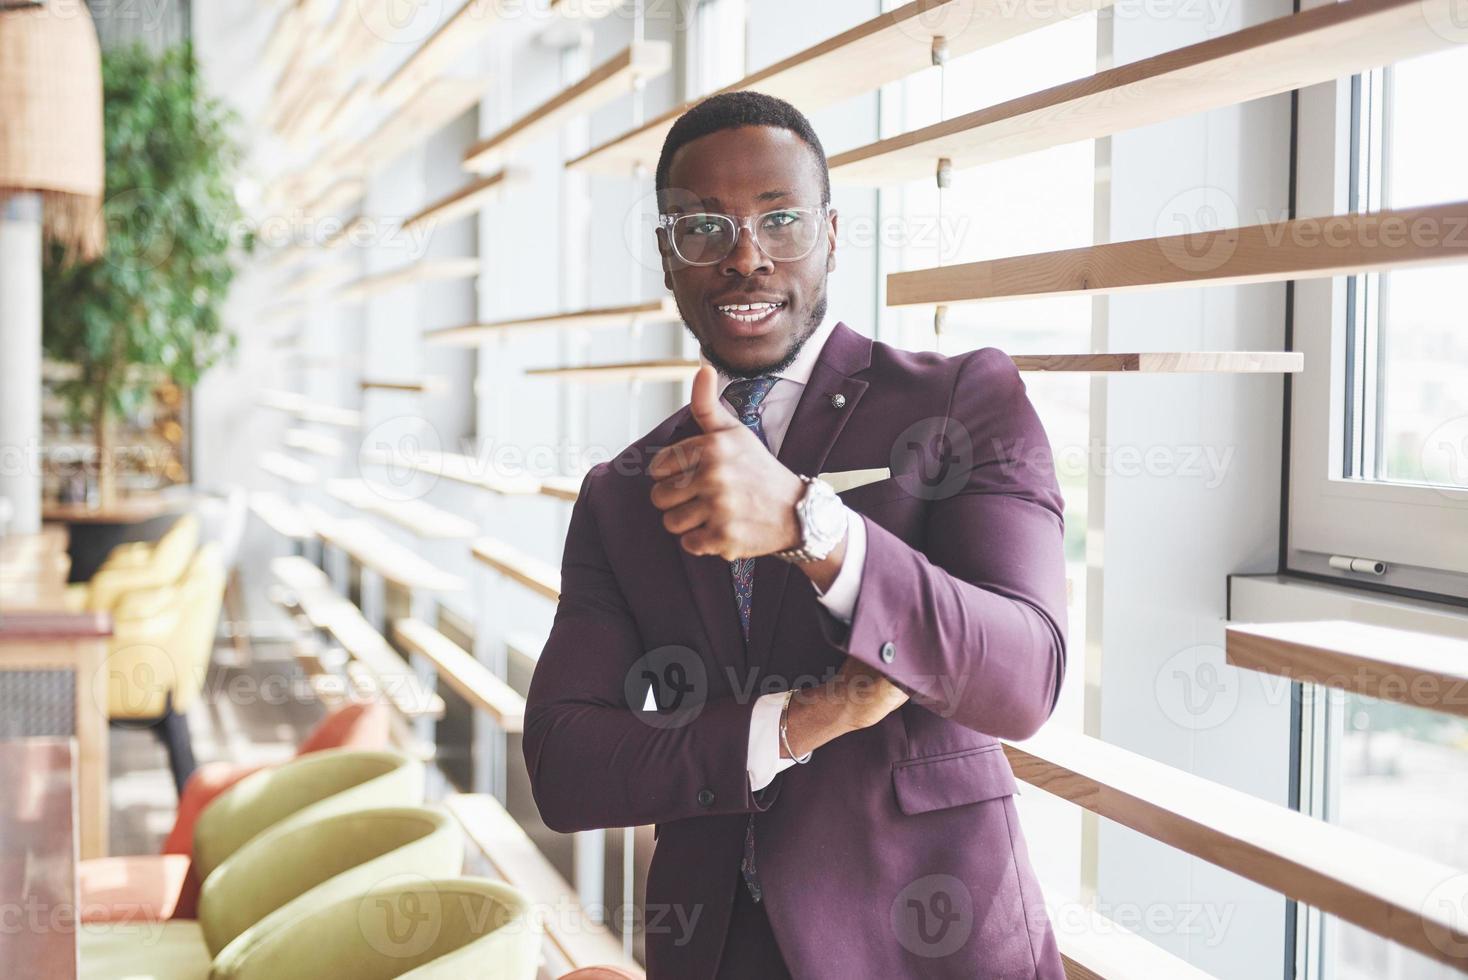 lyckligt leende av en framgångsrik afroamerikansk affärsman i kostym foto